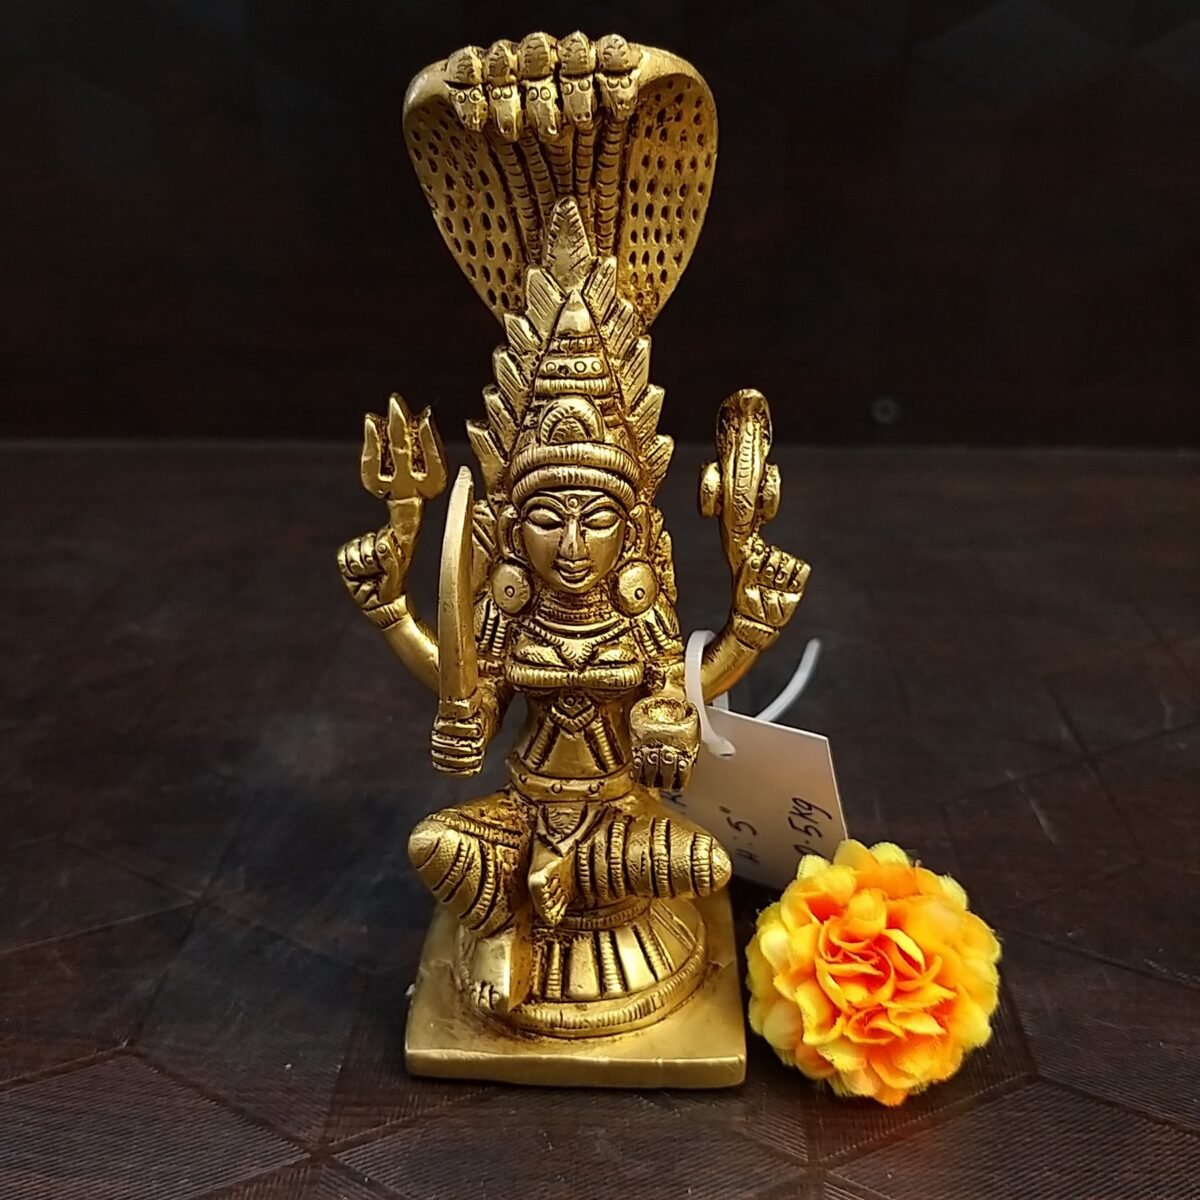 brass karu mariamman statue pooja items hindu god idols buy online india